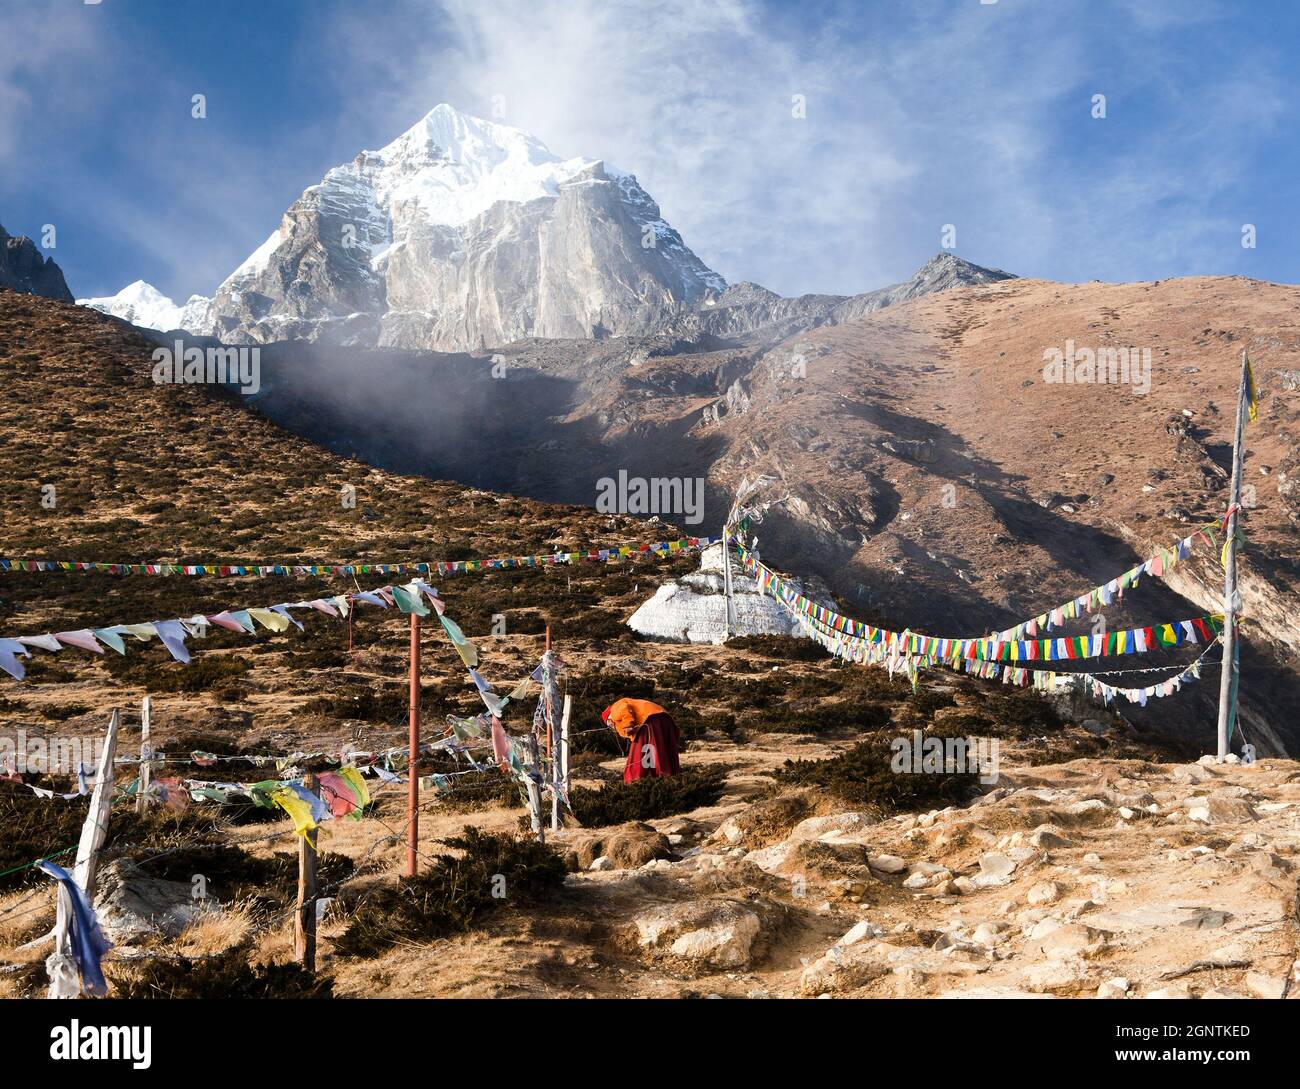 Monaco buddista, stupa e bandiere di preghiera vicino al monastero di Pangboche e picco Tabuche, vita nella valle di Khumbu sulla strada per il campo base Everest, nepal Foto Stock